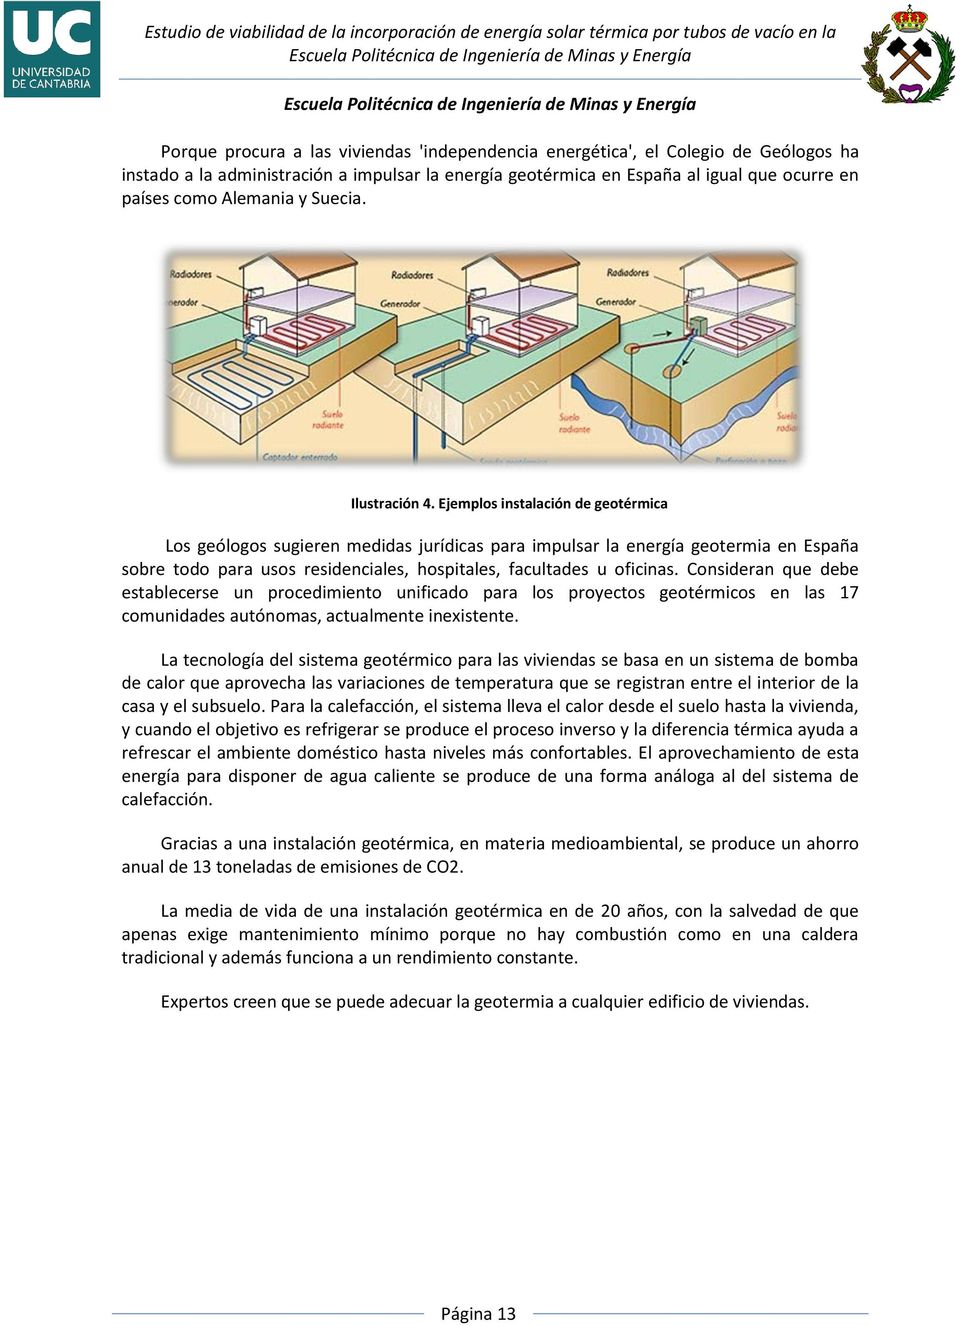 Ejemplos instalación de geotérmica Los geólogos sugieren medidas jurídicas para impulsar la energía geotermia en España sobre todo para usos residenciales, hospitales, facultades u oficinas.